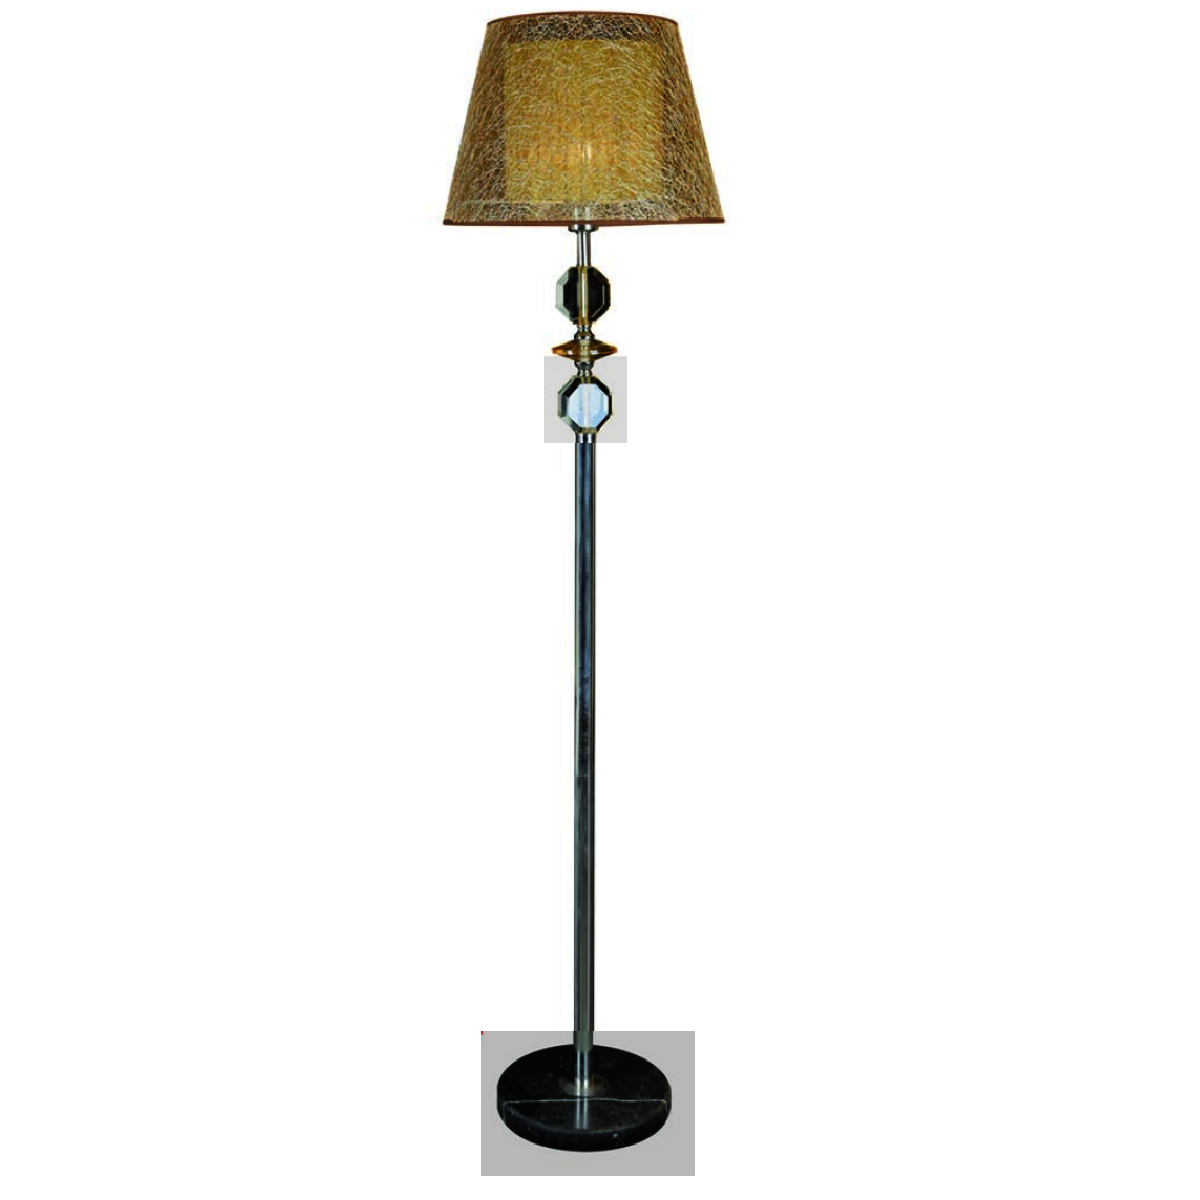 HF - ĐB - 6315: Đèn cây đặt bàn/ đầu giường - KT: Ø410mm x H1620mm - Bóng đèn E27 x 1 bóng